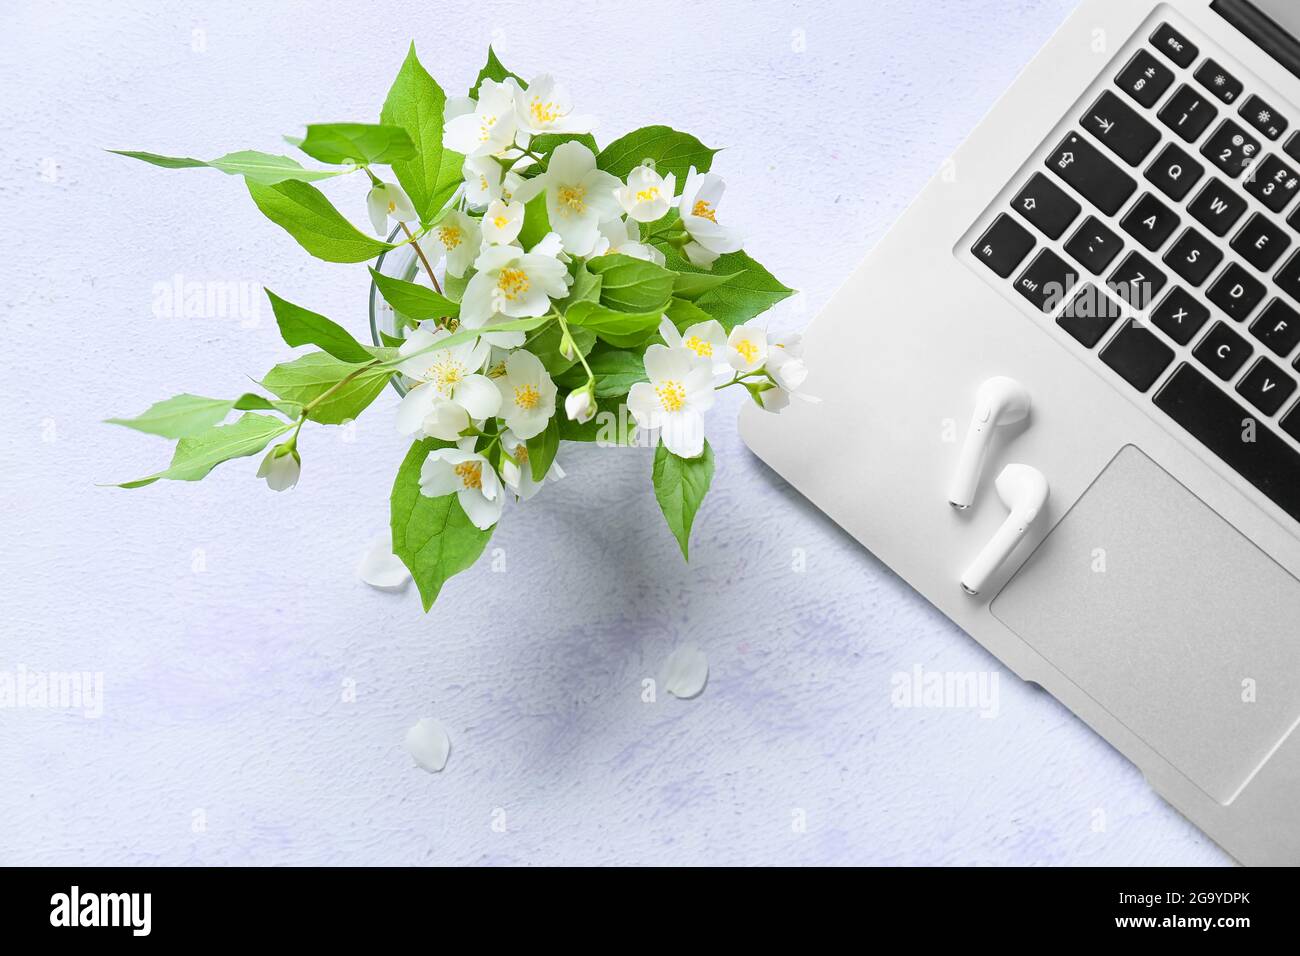 Moderner Laptop, Kopfhörer und wunderschöne Jasminblüten auf hellem Hintergrund Stockfoto